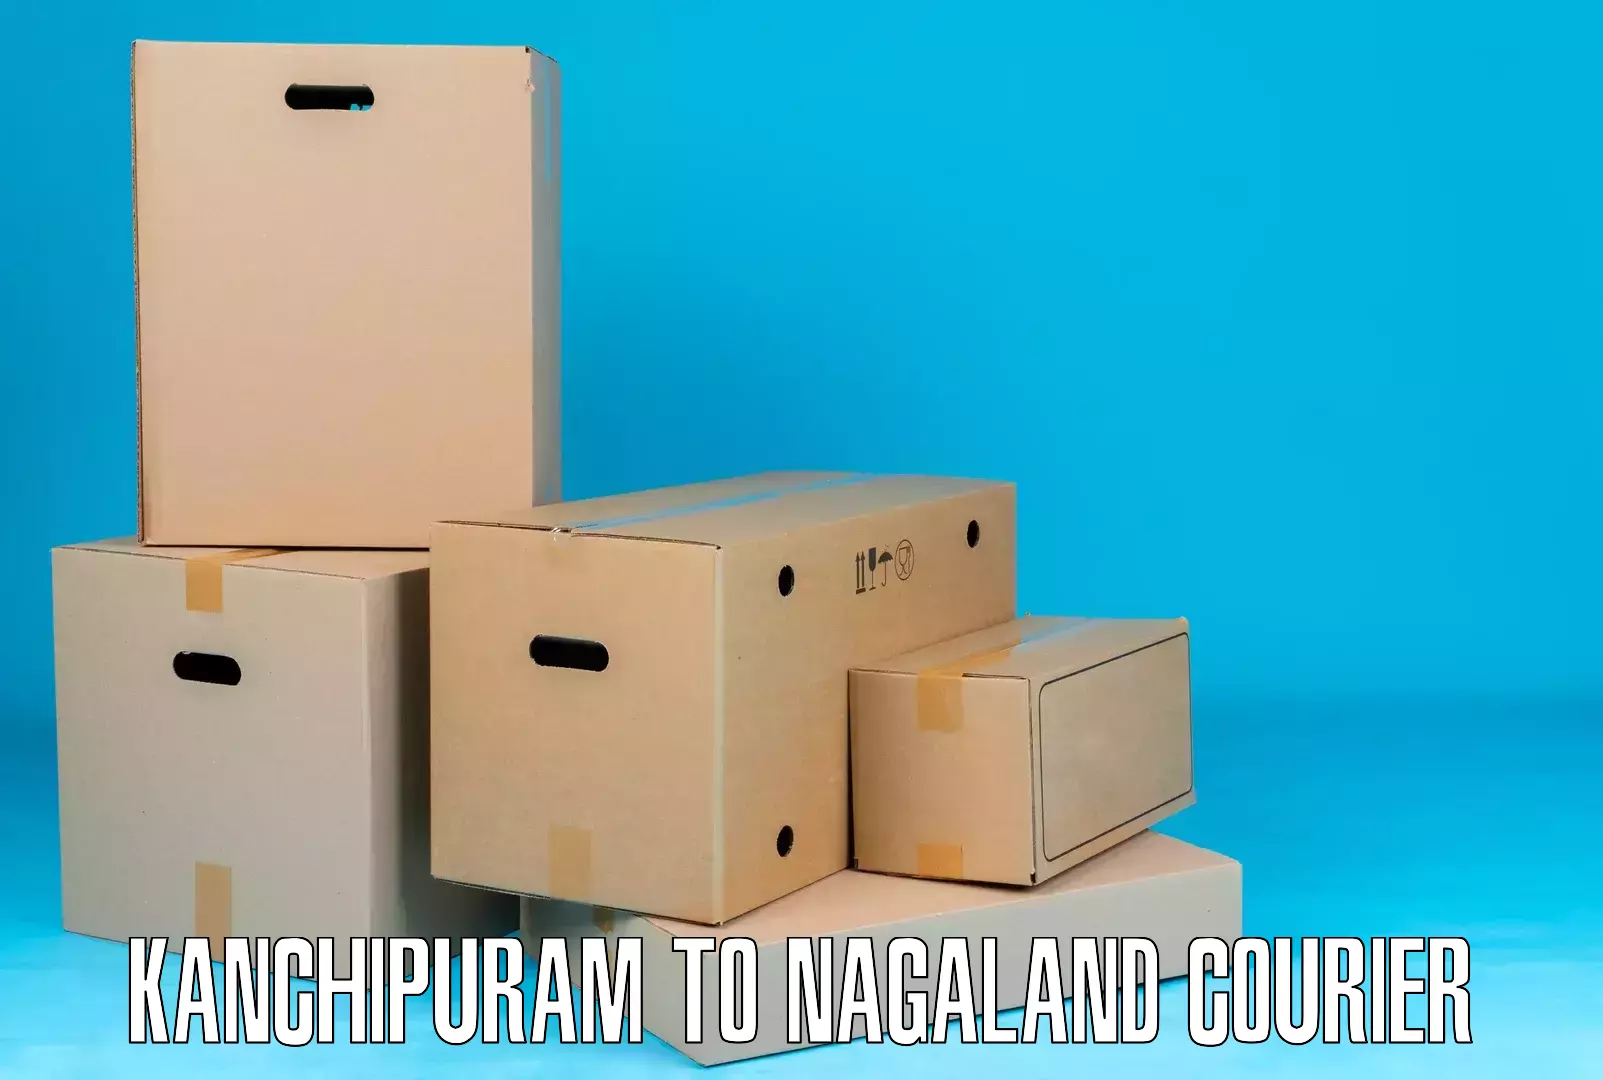 Supply chain efficiency Kanchipuram to Kohima